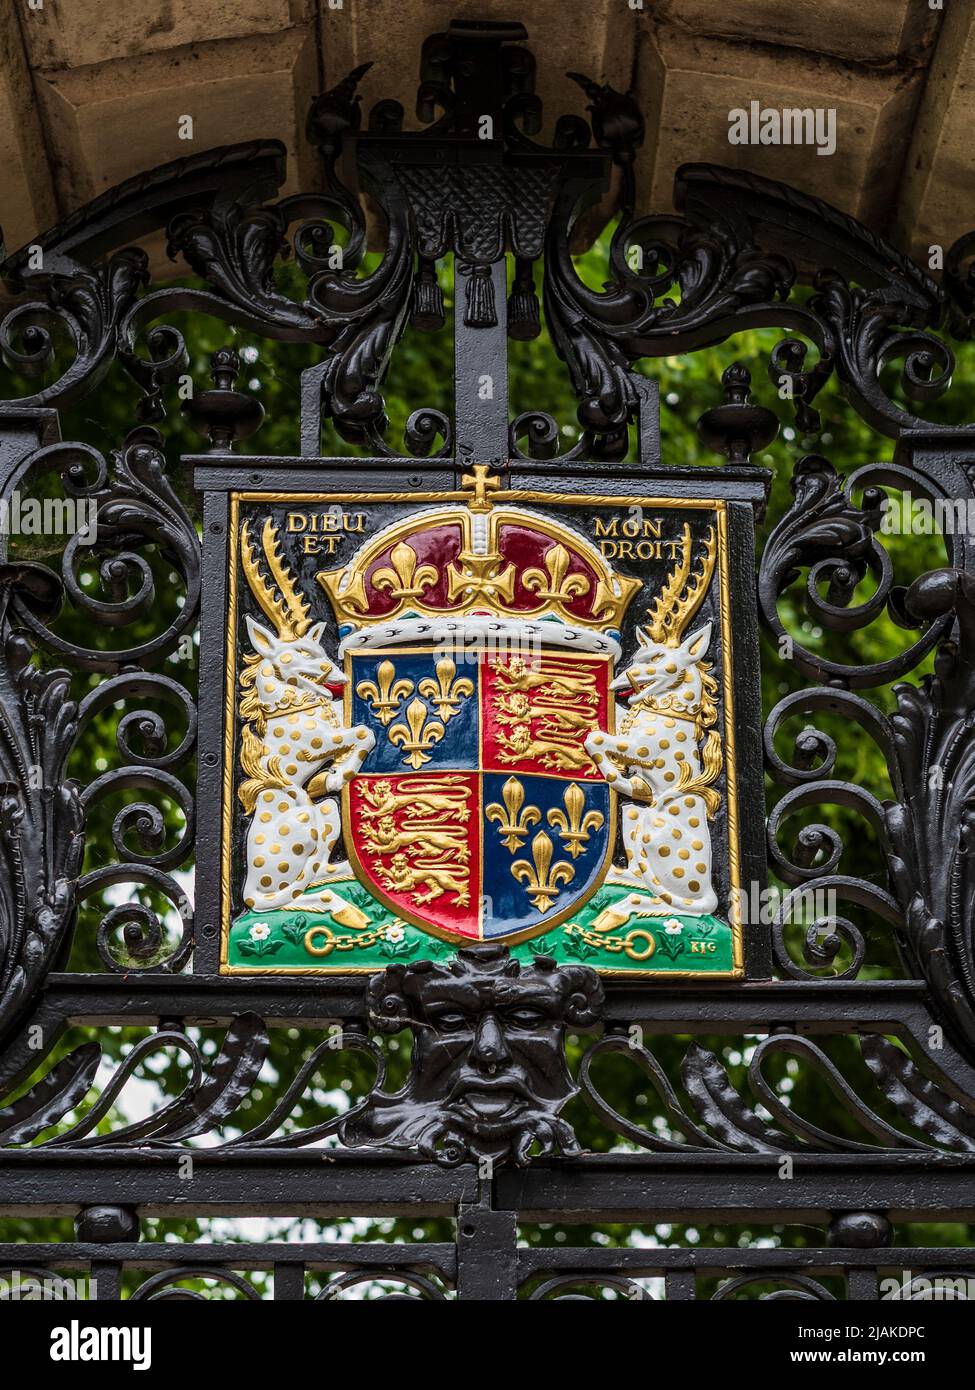 Henry VI Wappen, Kings College Cambridge. Königliches Wappen von König Heinrich VI., Gründer des Kings College im Jahr 1441 Stockfoto